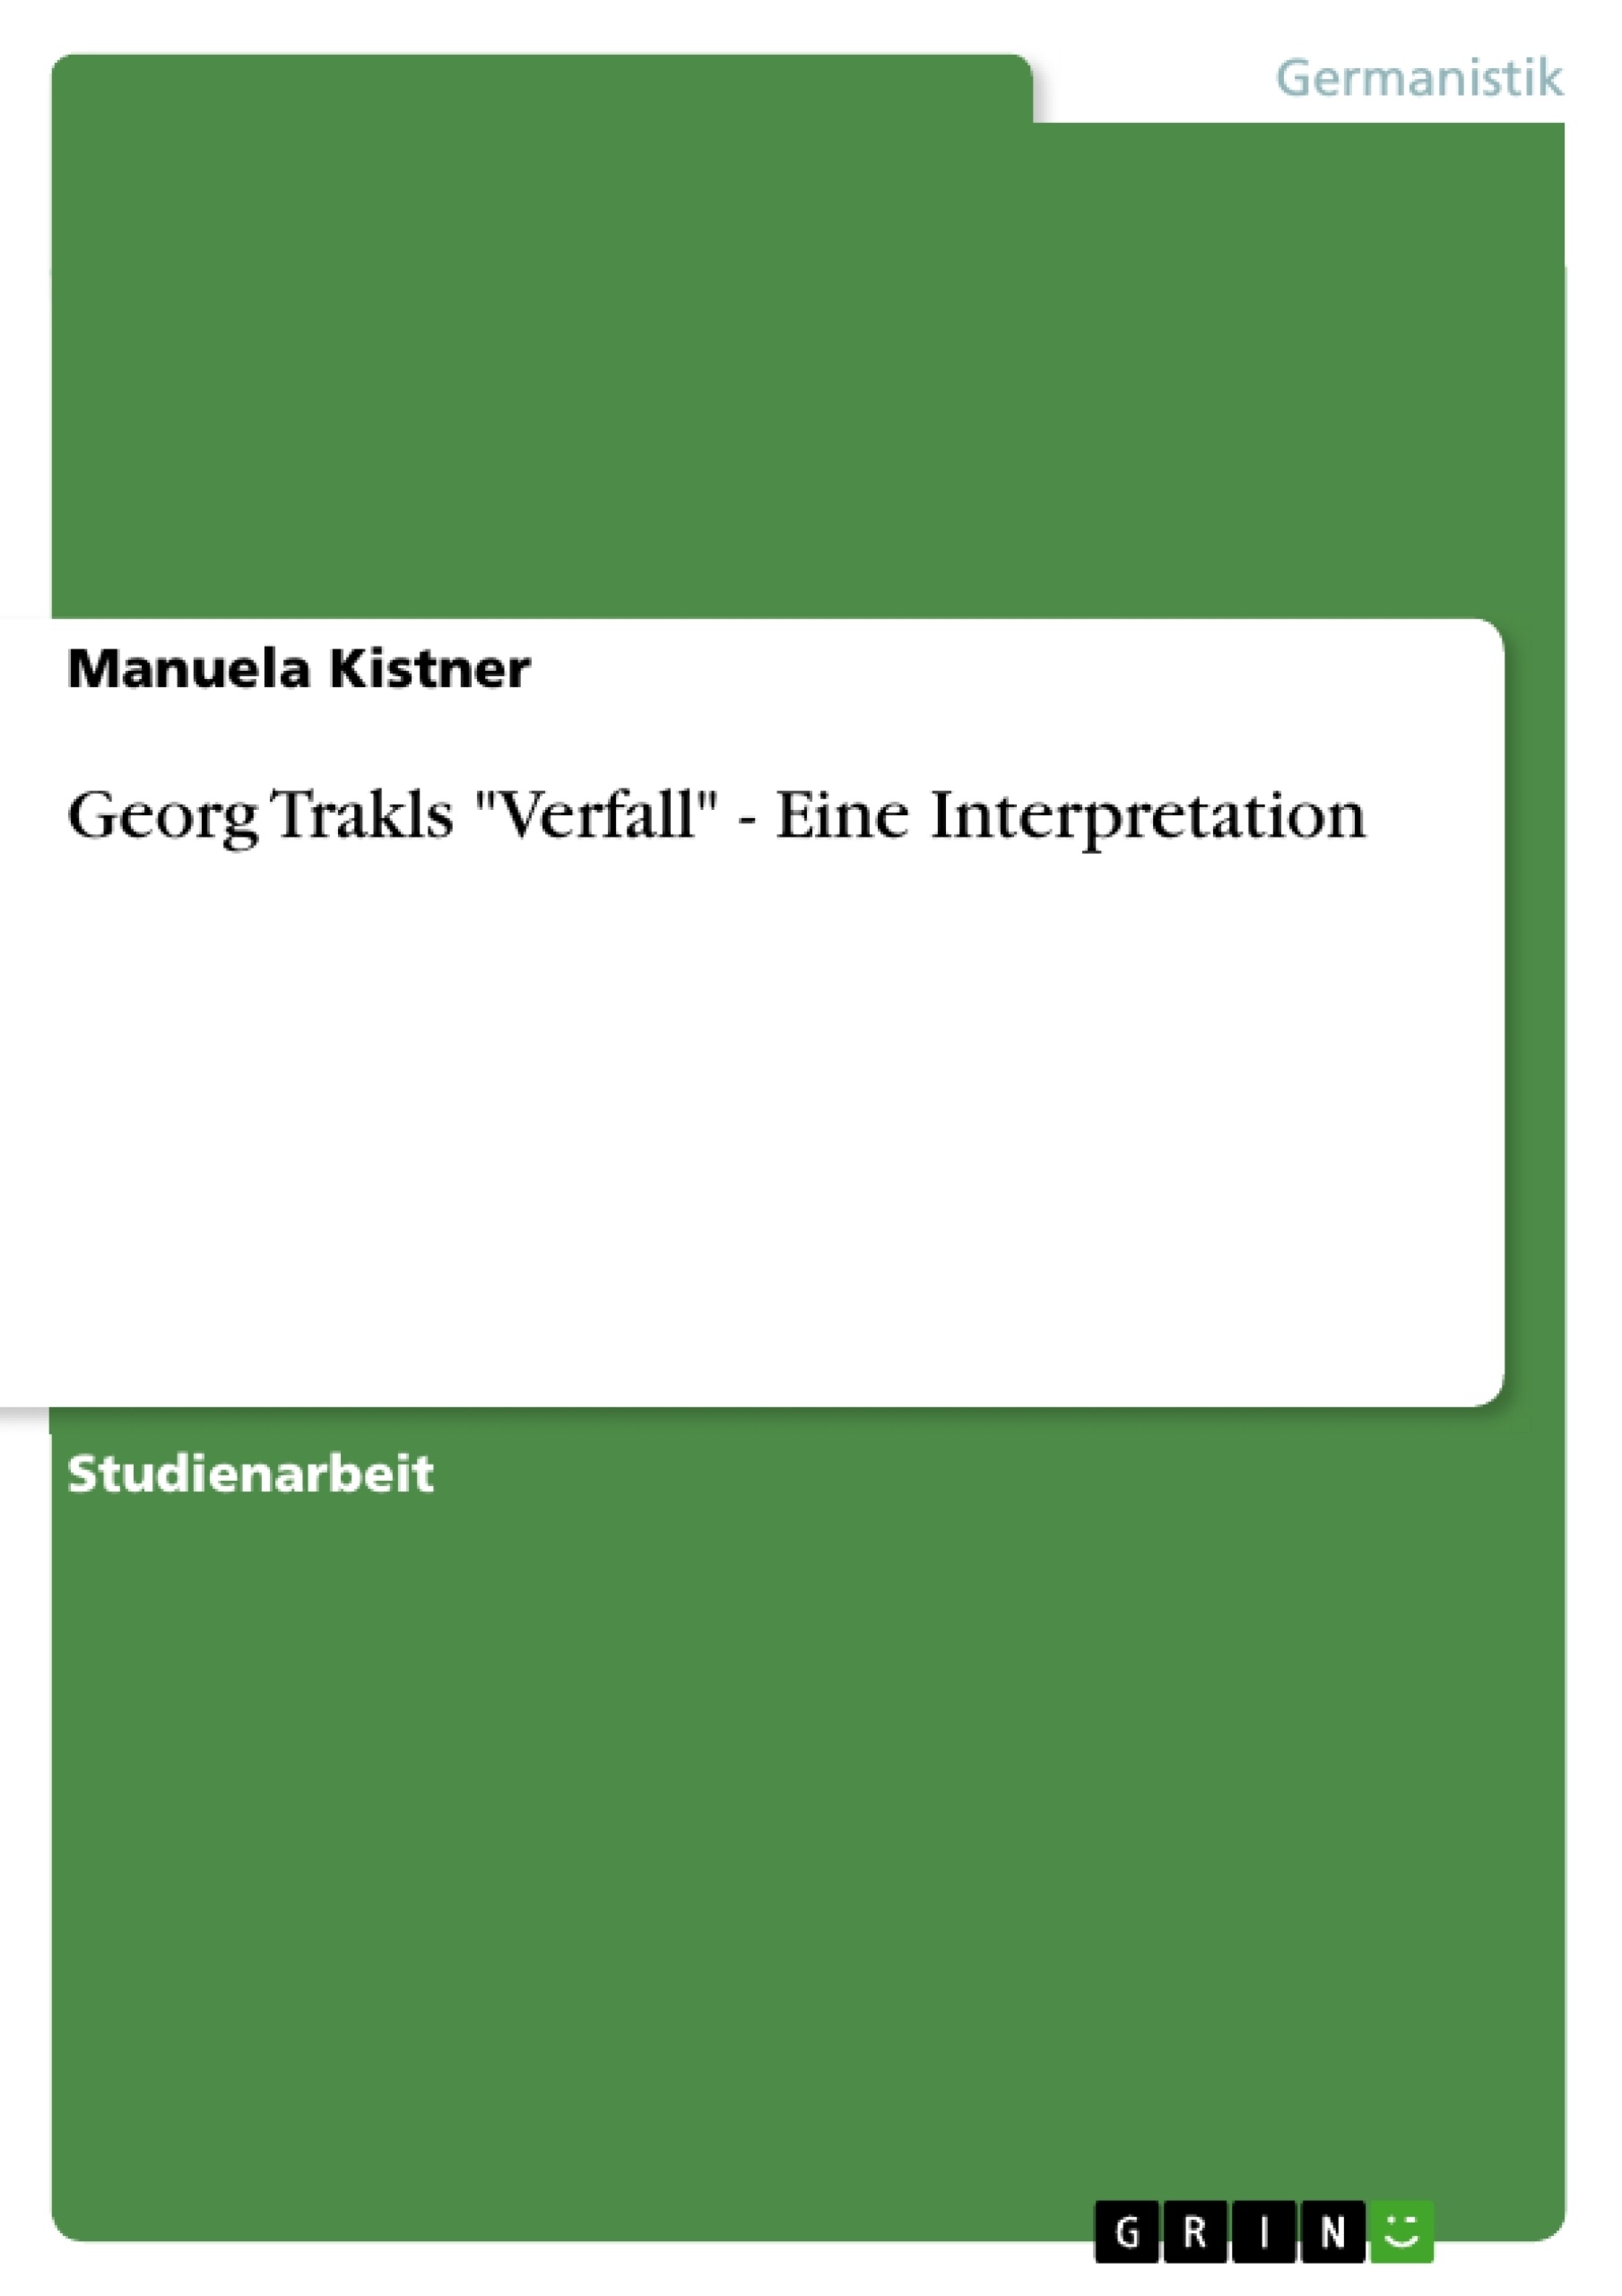 Title: Georg Trakls "Verfall" - Eine Interpretation